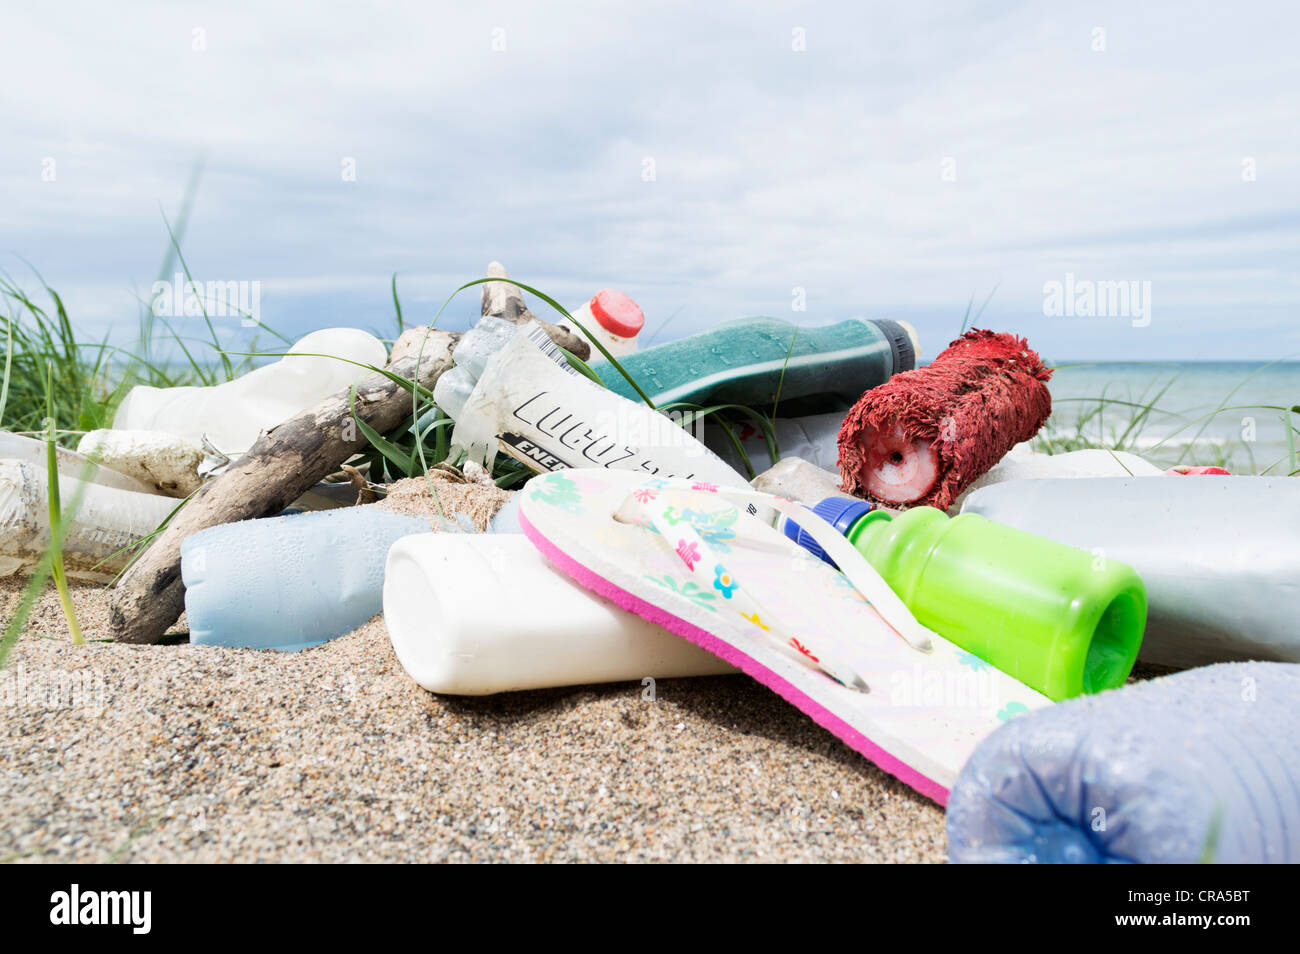 Les bouteilles en plastique et autres déchets rejetés par la marée sur une plage Banque D'Images